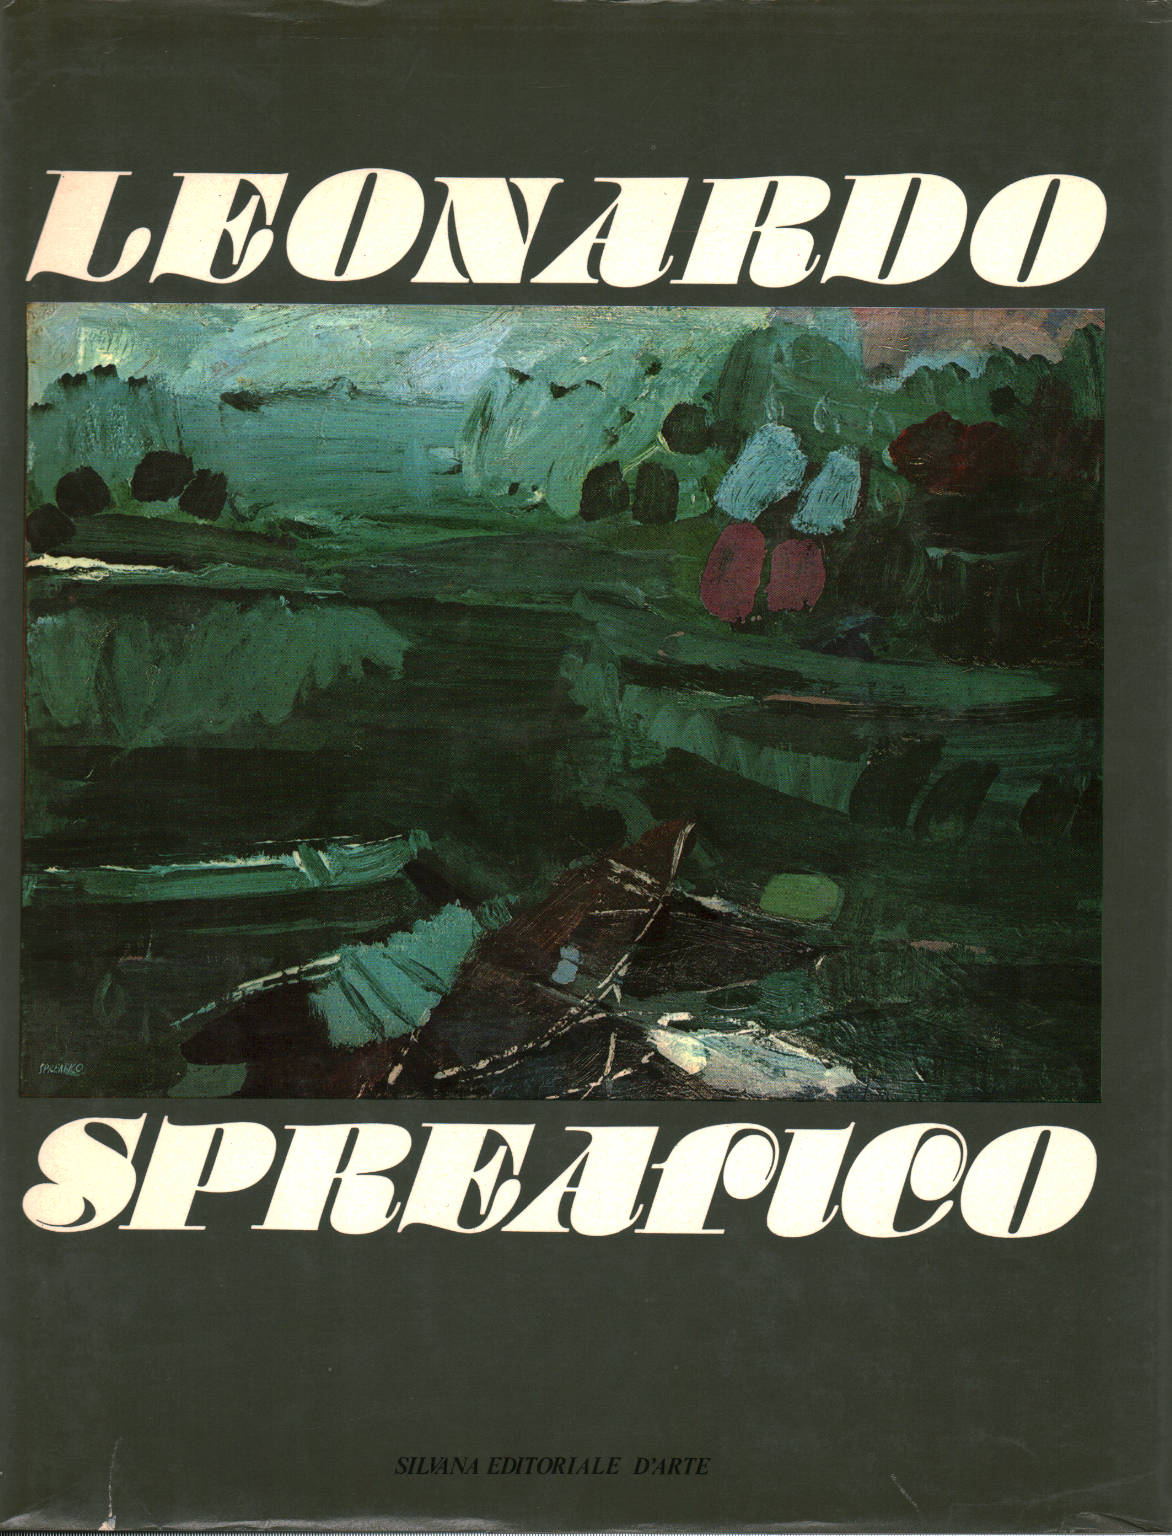 Leonardo Sprearico, AA.VV, Leonardo Spreafico